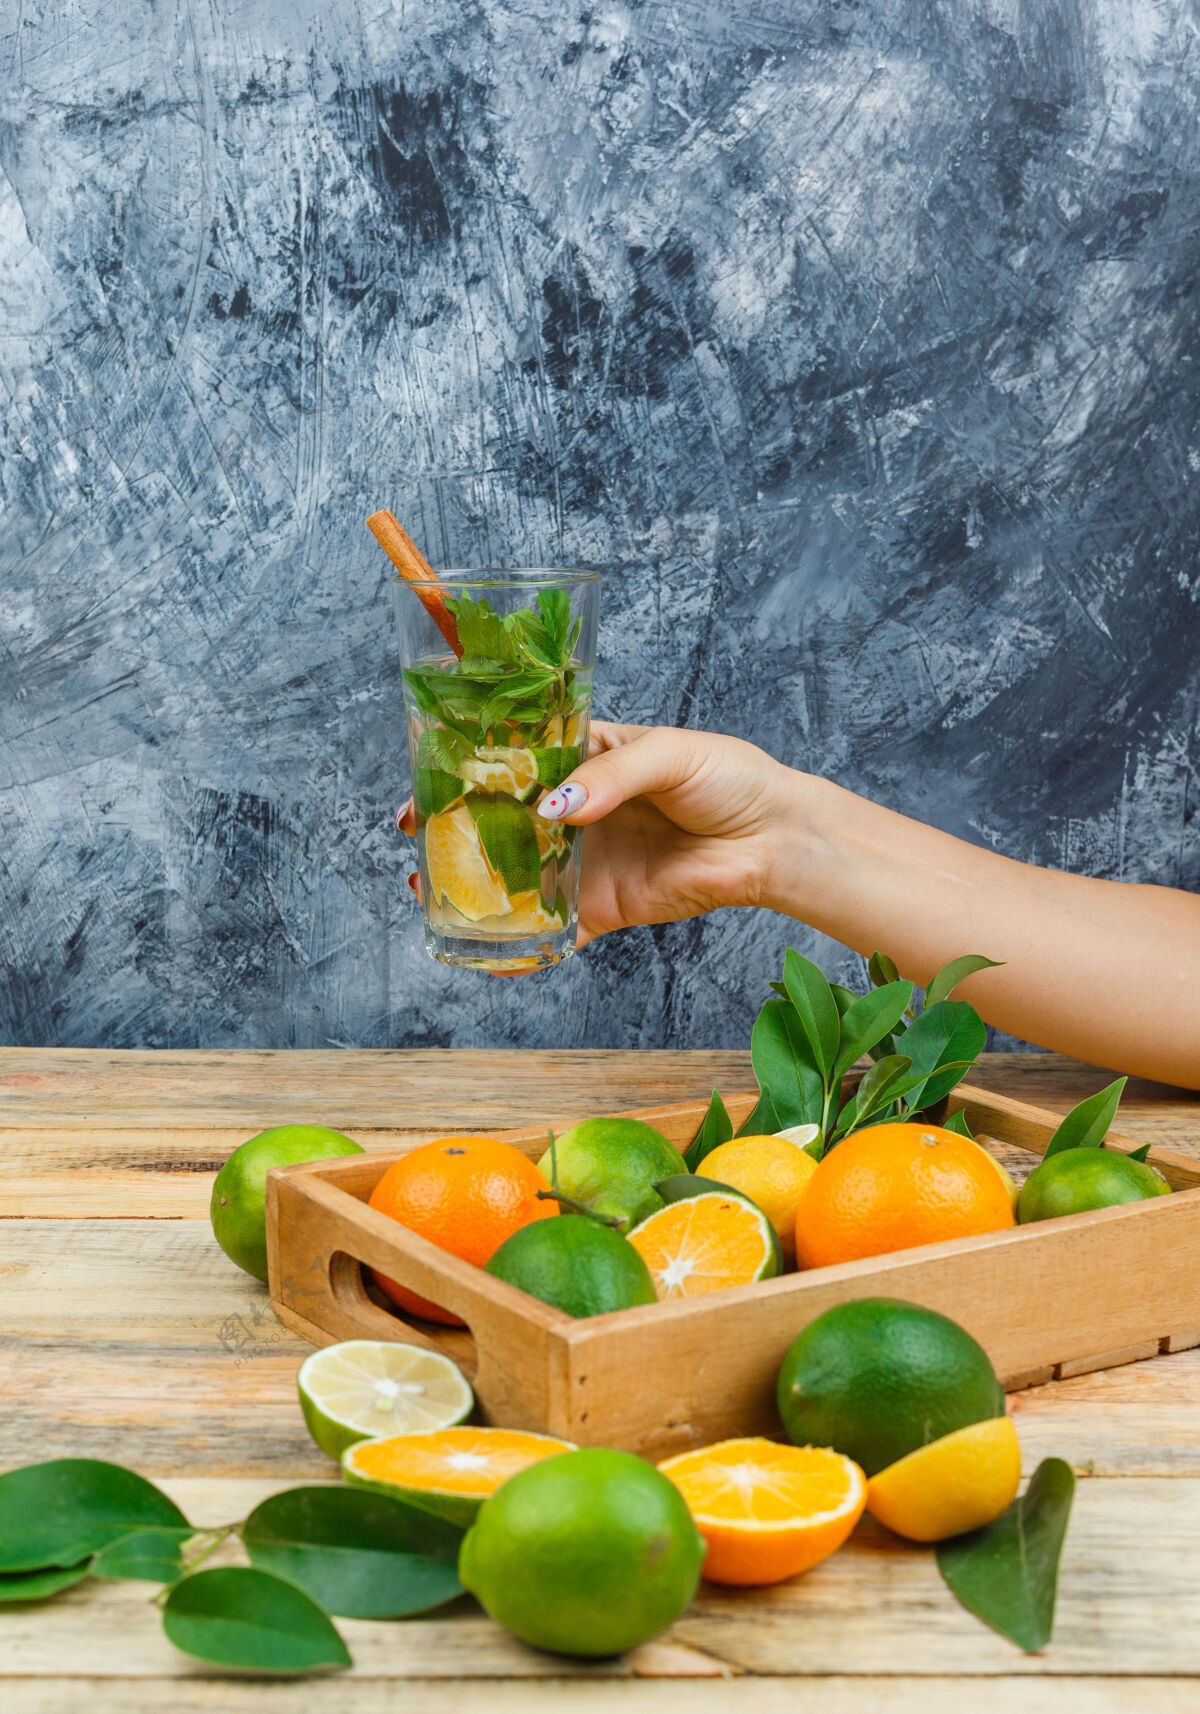 木材用发酵饮料把柑橘类水果放在木箱里关上健康块柠檬